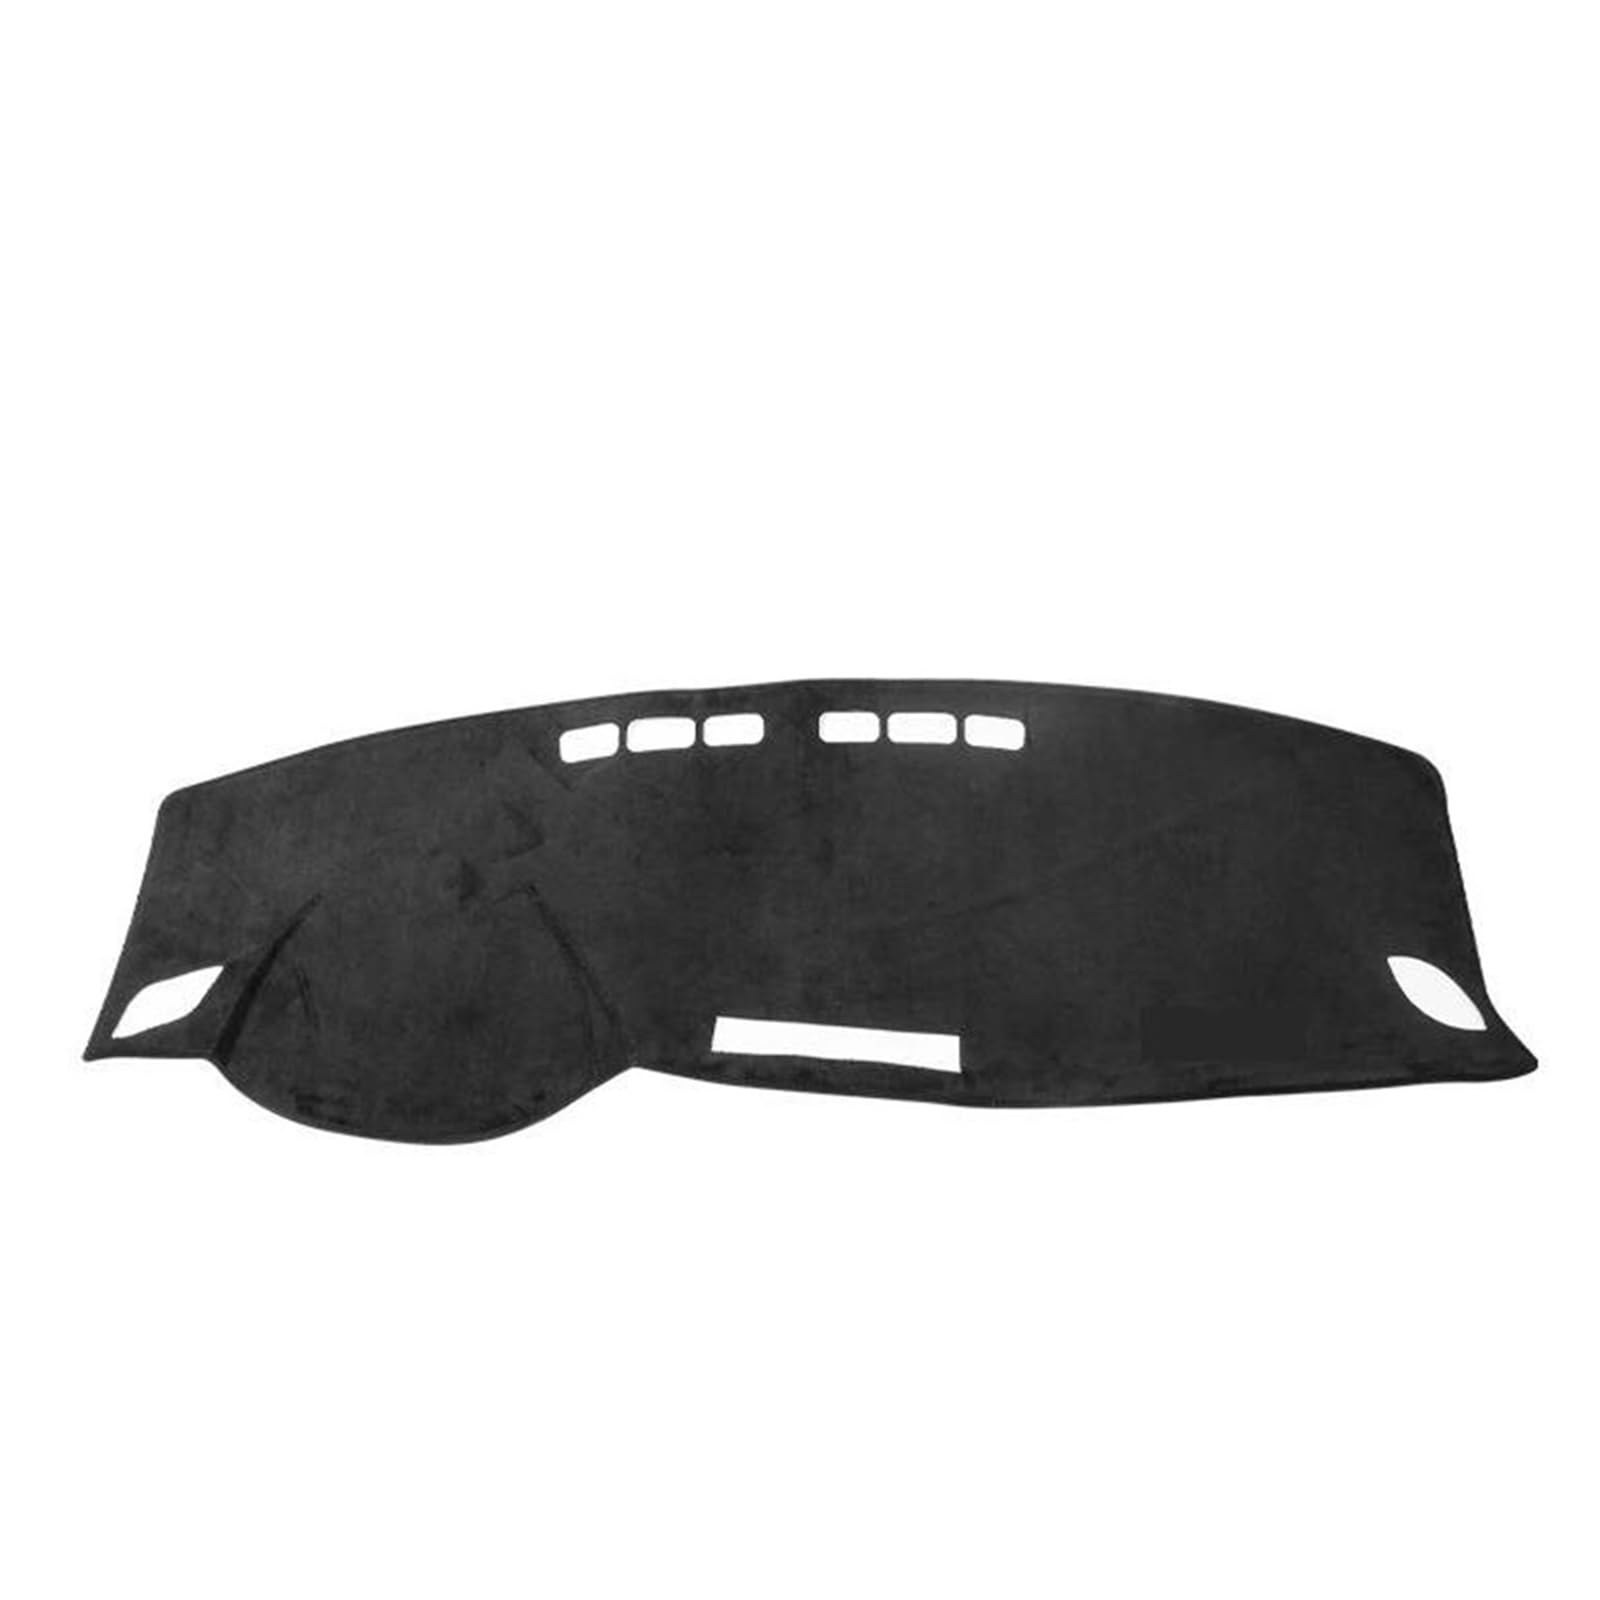 CAVINBDZ Für A-udi A3 8v 2013 2014 2015 2016 2017 2018 2019 Auto Dashboard Abdeckung Anti-Slip Sonnenschutz Pad Armaturenbrett Unterlage(Black Side,RHD) von CAVINBDZ